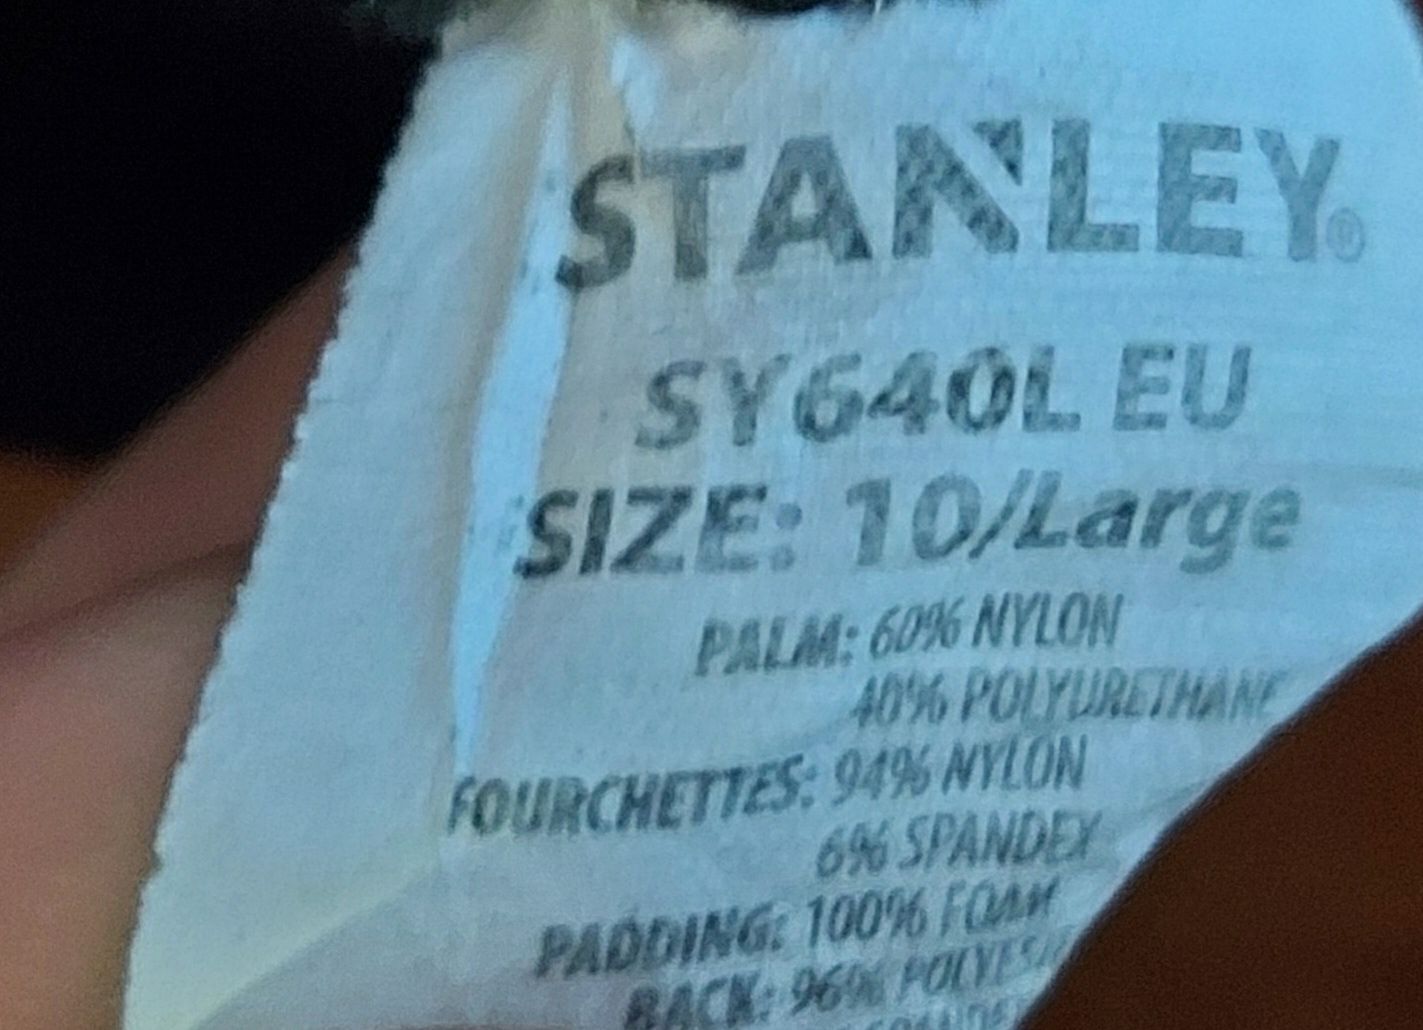 велоперчатки фірми Stanley 

Стан хороший 

Розмір: L

Замір по велико